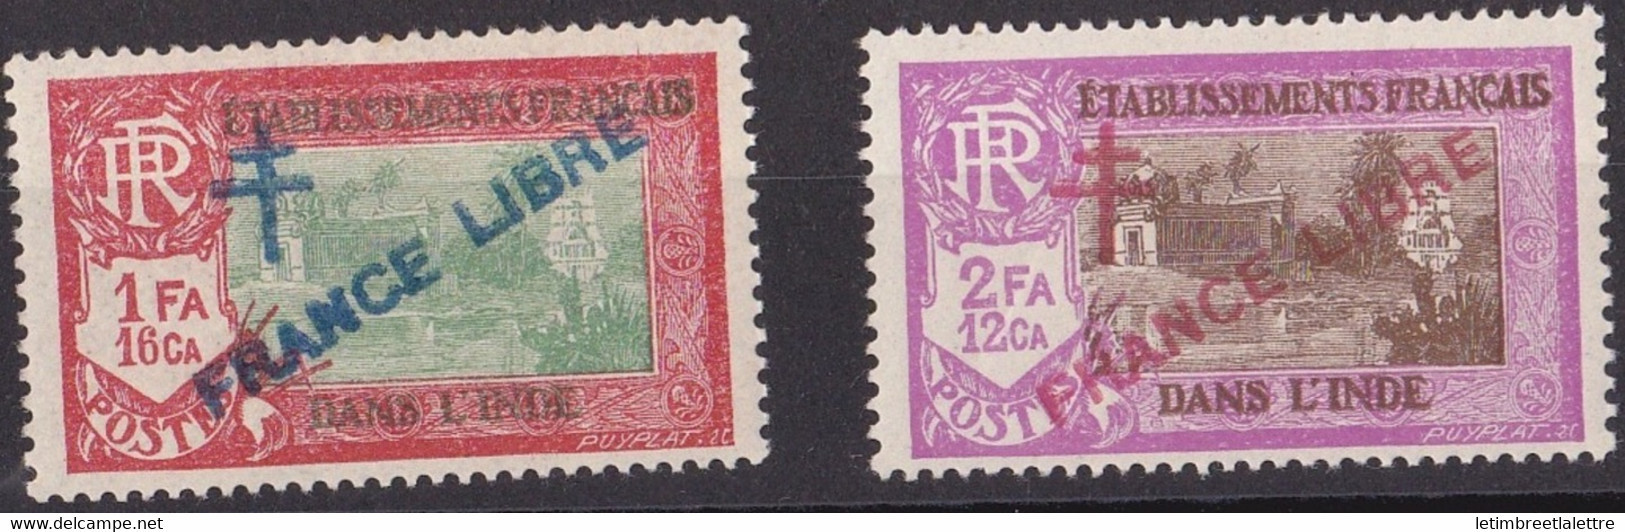 Inde - YT N° 164 Et 165 ** - Neuf Sans Charnière - 1941 / 1943 - Unused Stamps